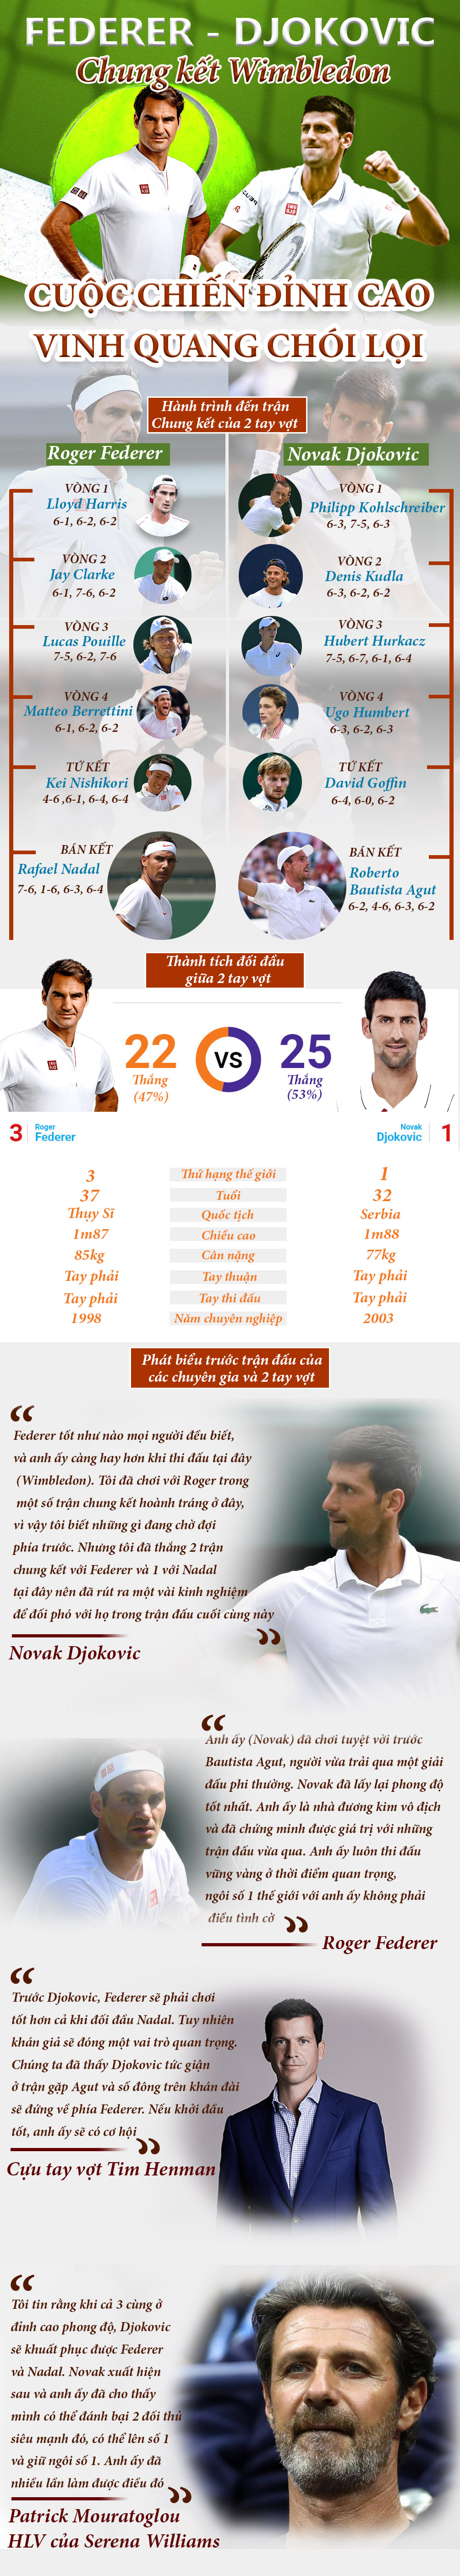 Federer – Djokovic, chung kết Wimbledon: 1 núi không thể có 2 hổ - 1